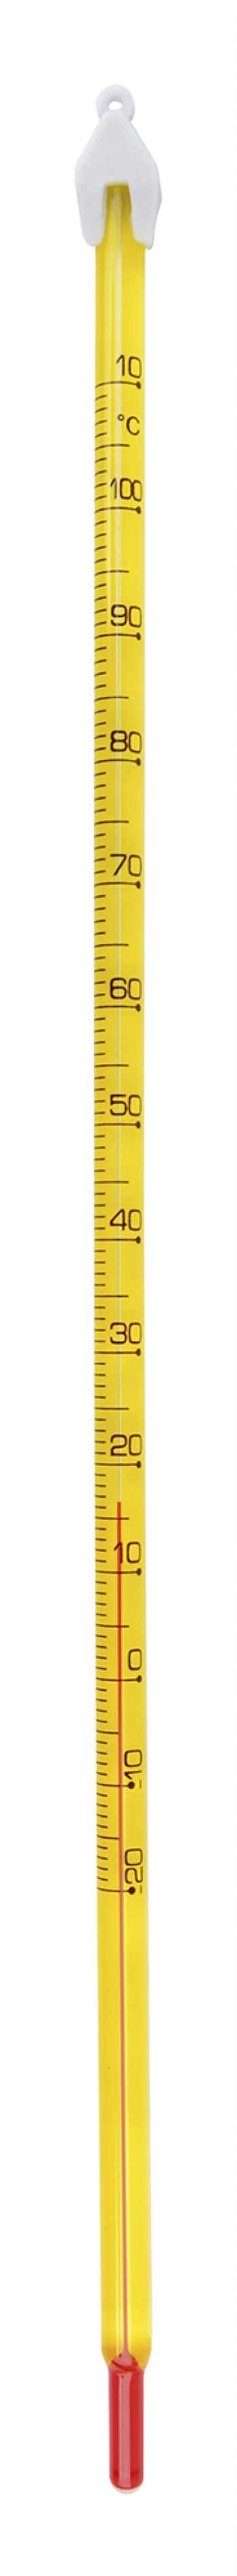 Termometer -20 til 100 grader C, Budget